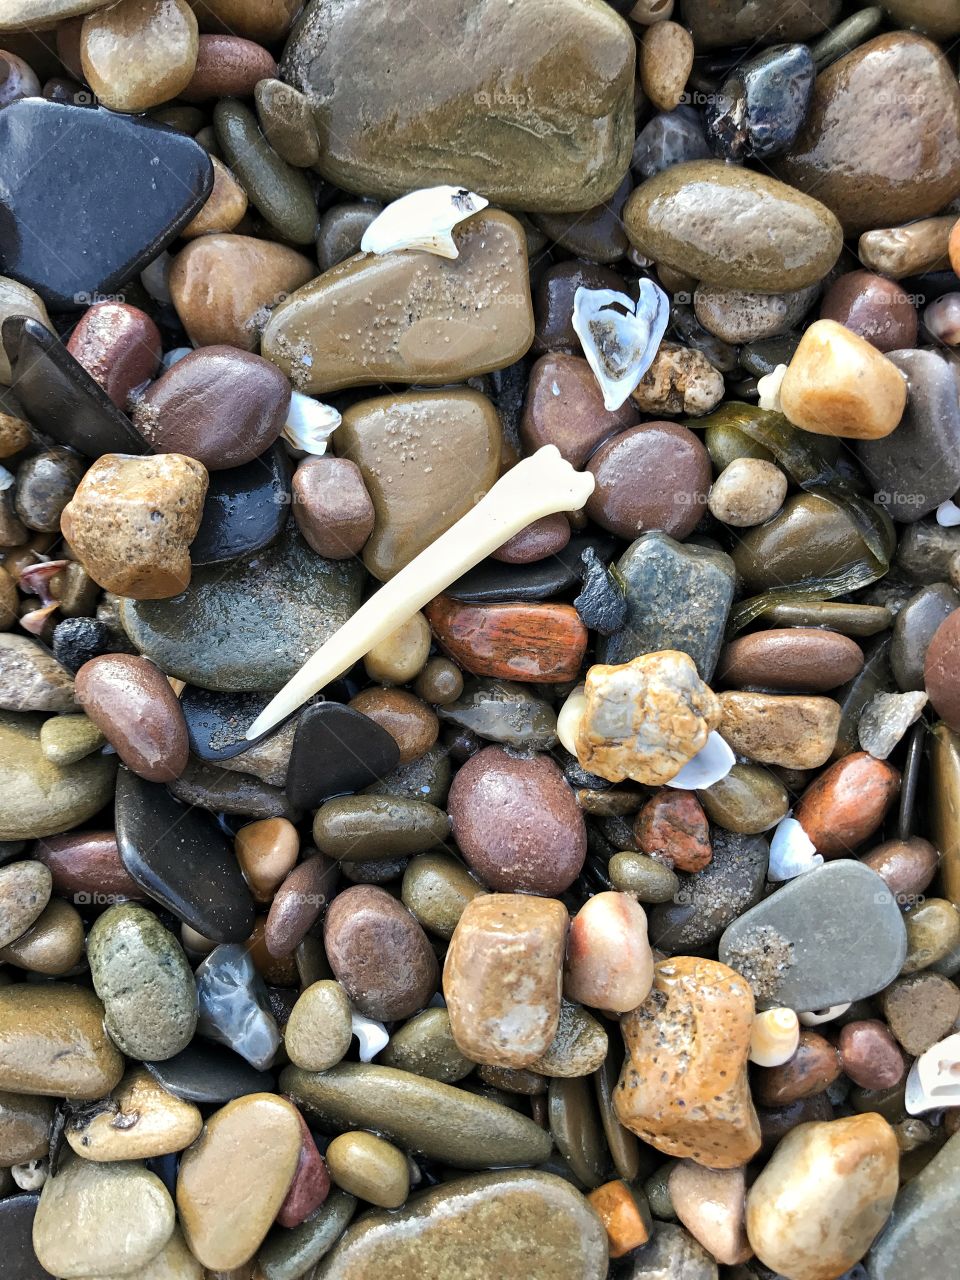 Lake Erie beach pebble and bone